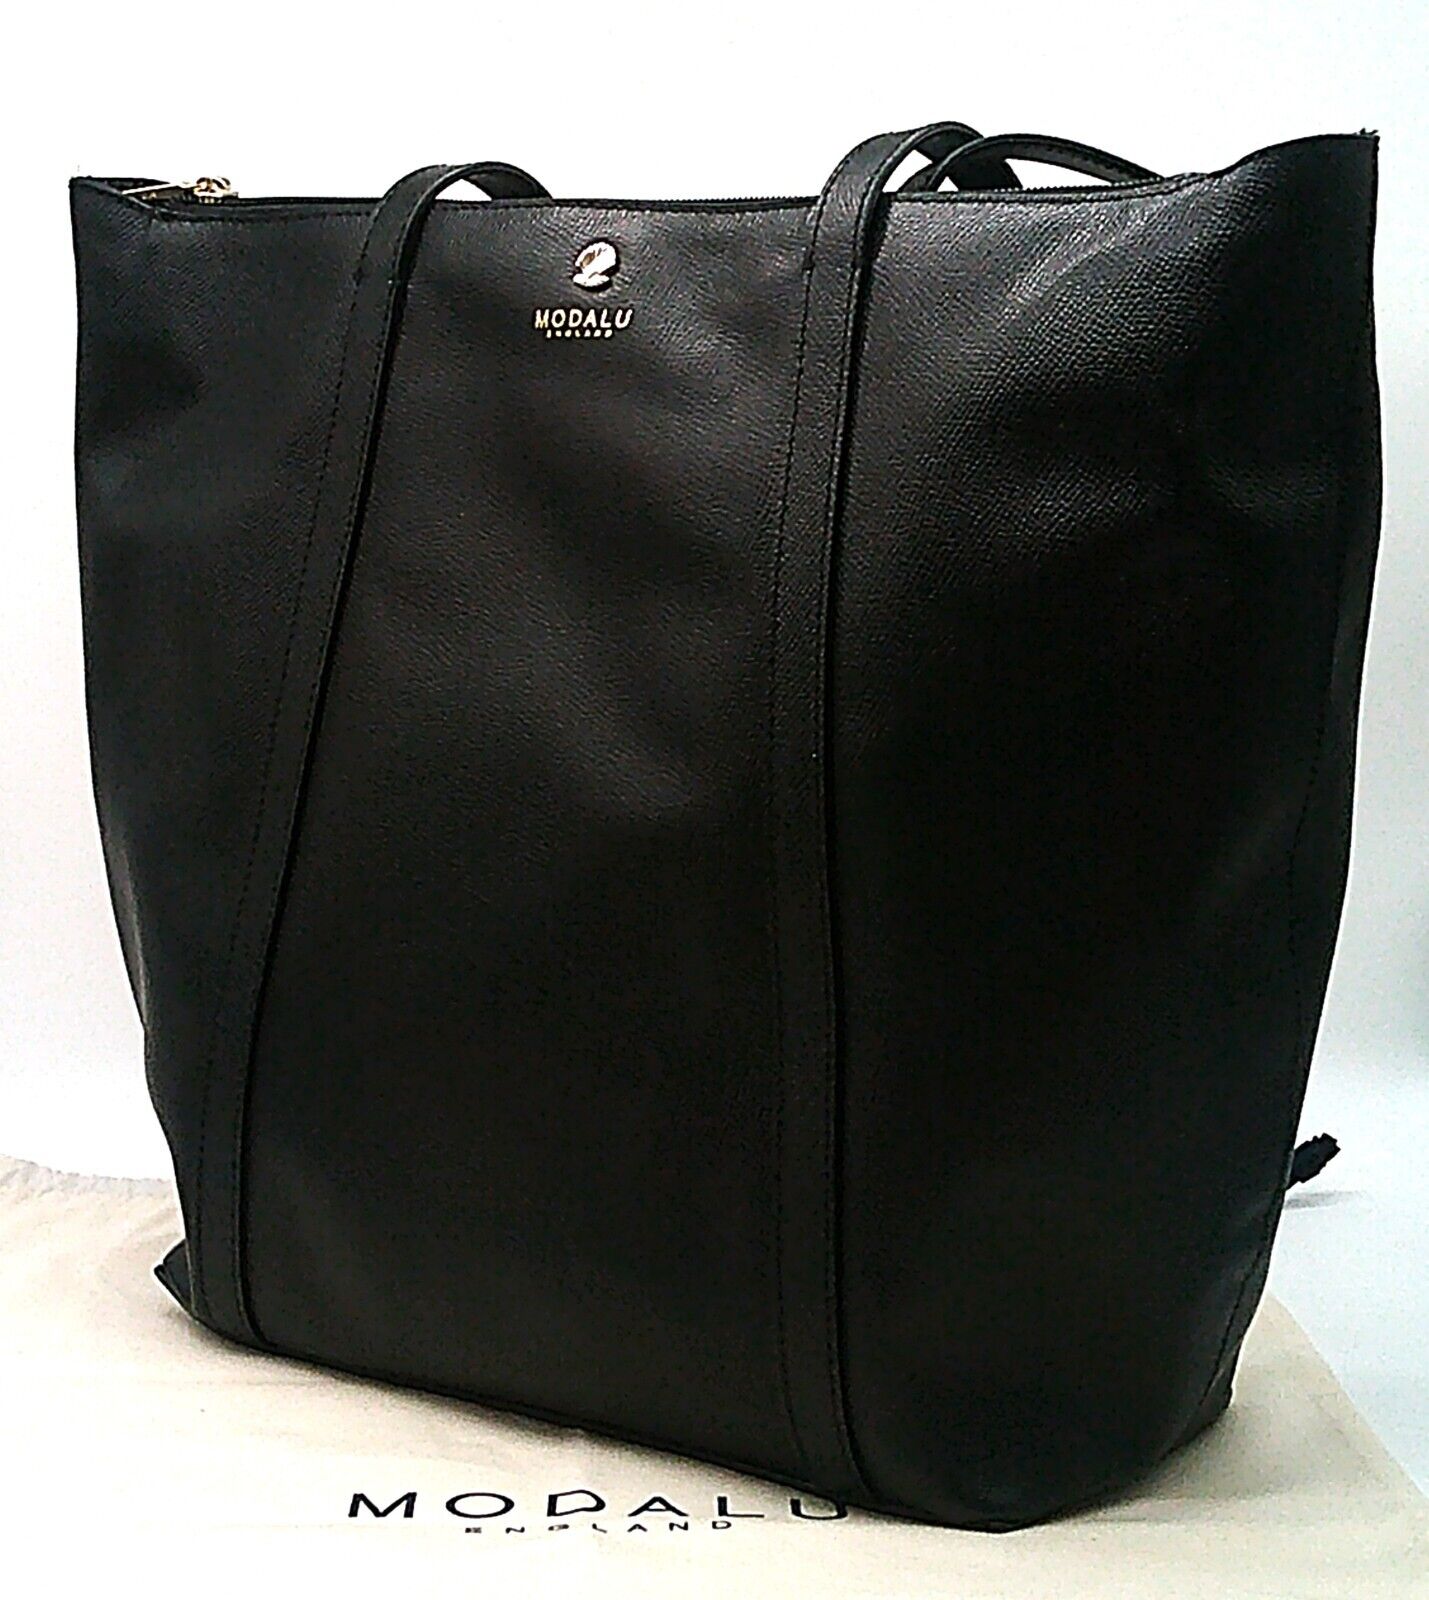 Leather Modalu Poppy Black Tote Bag RRP £149